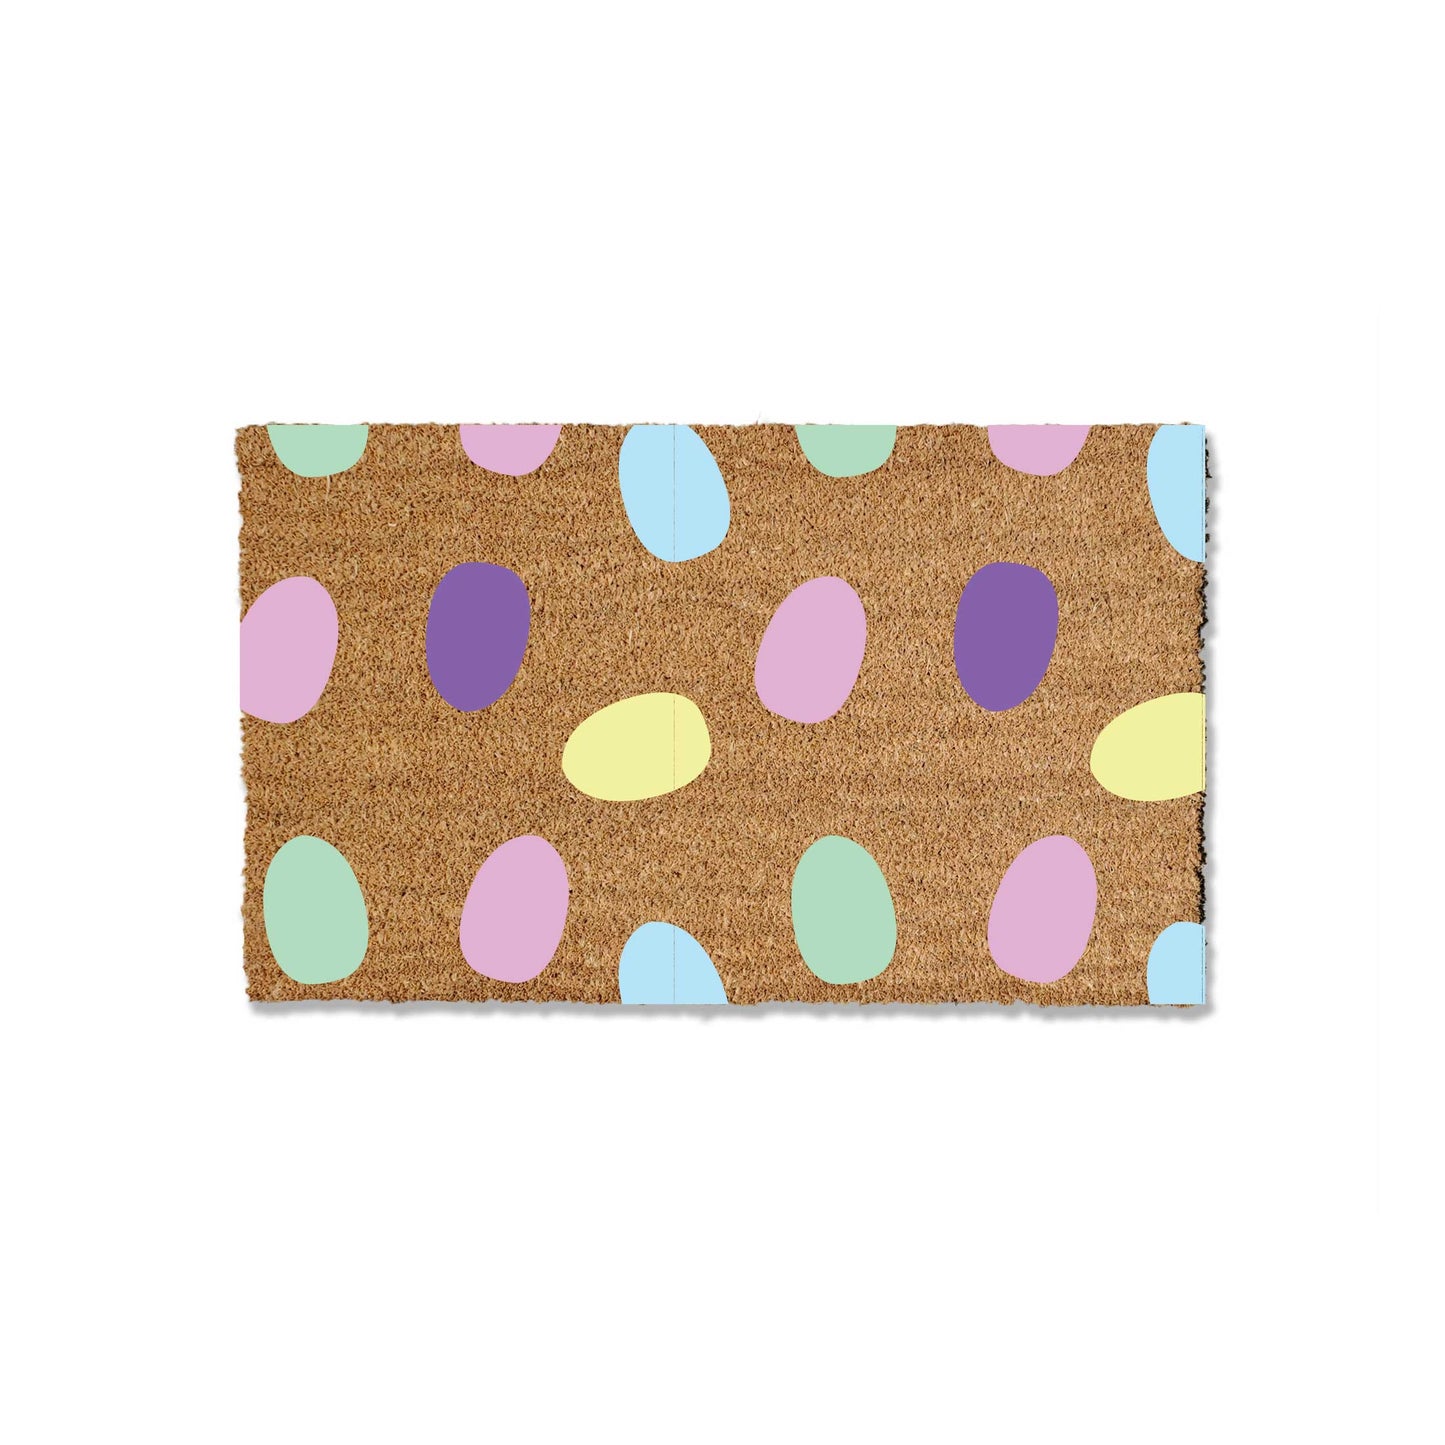 Pastel Easter Egg Patterned Doormat